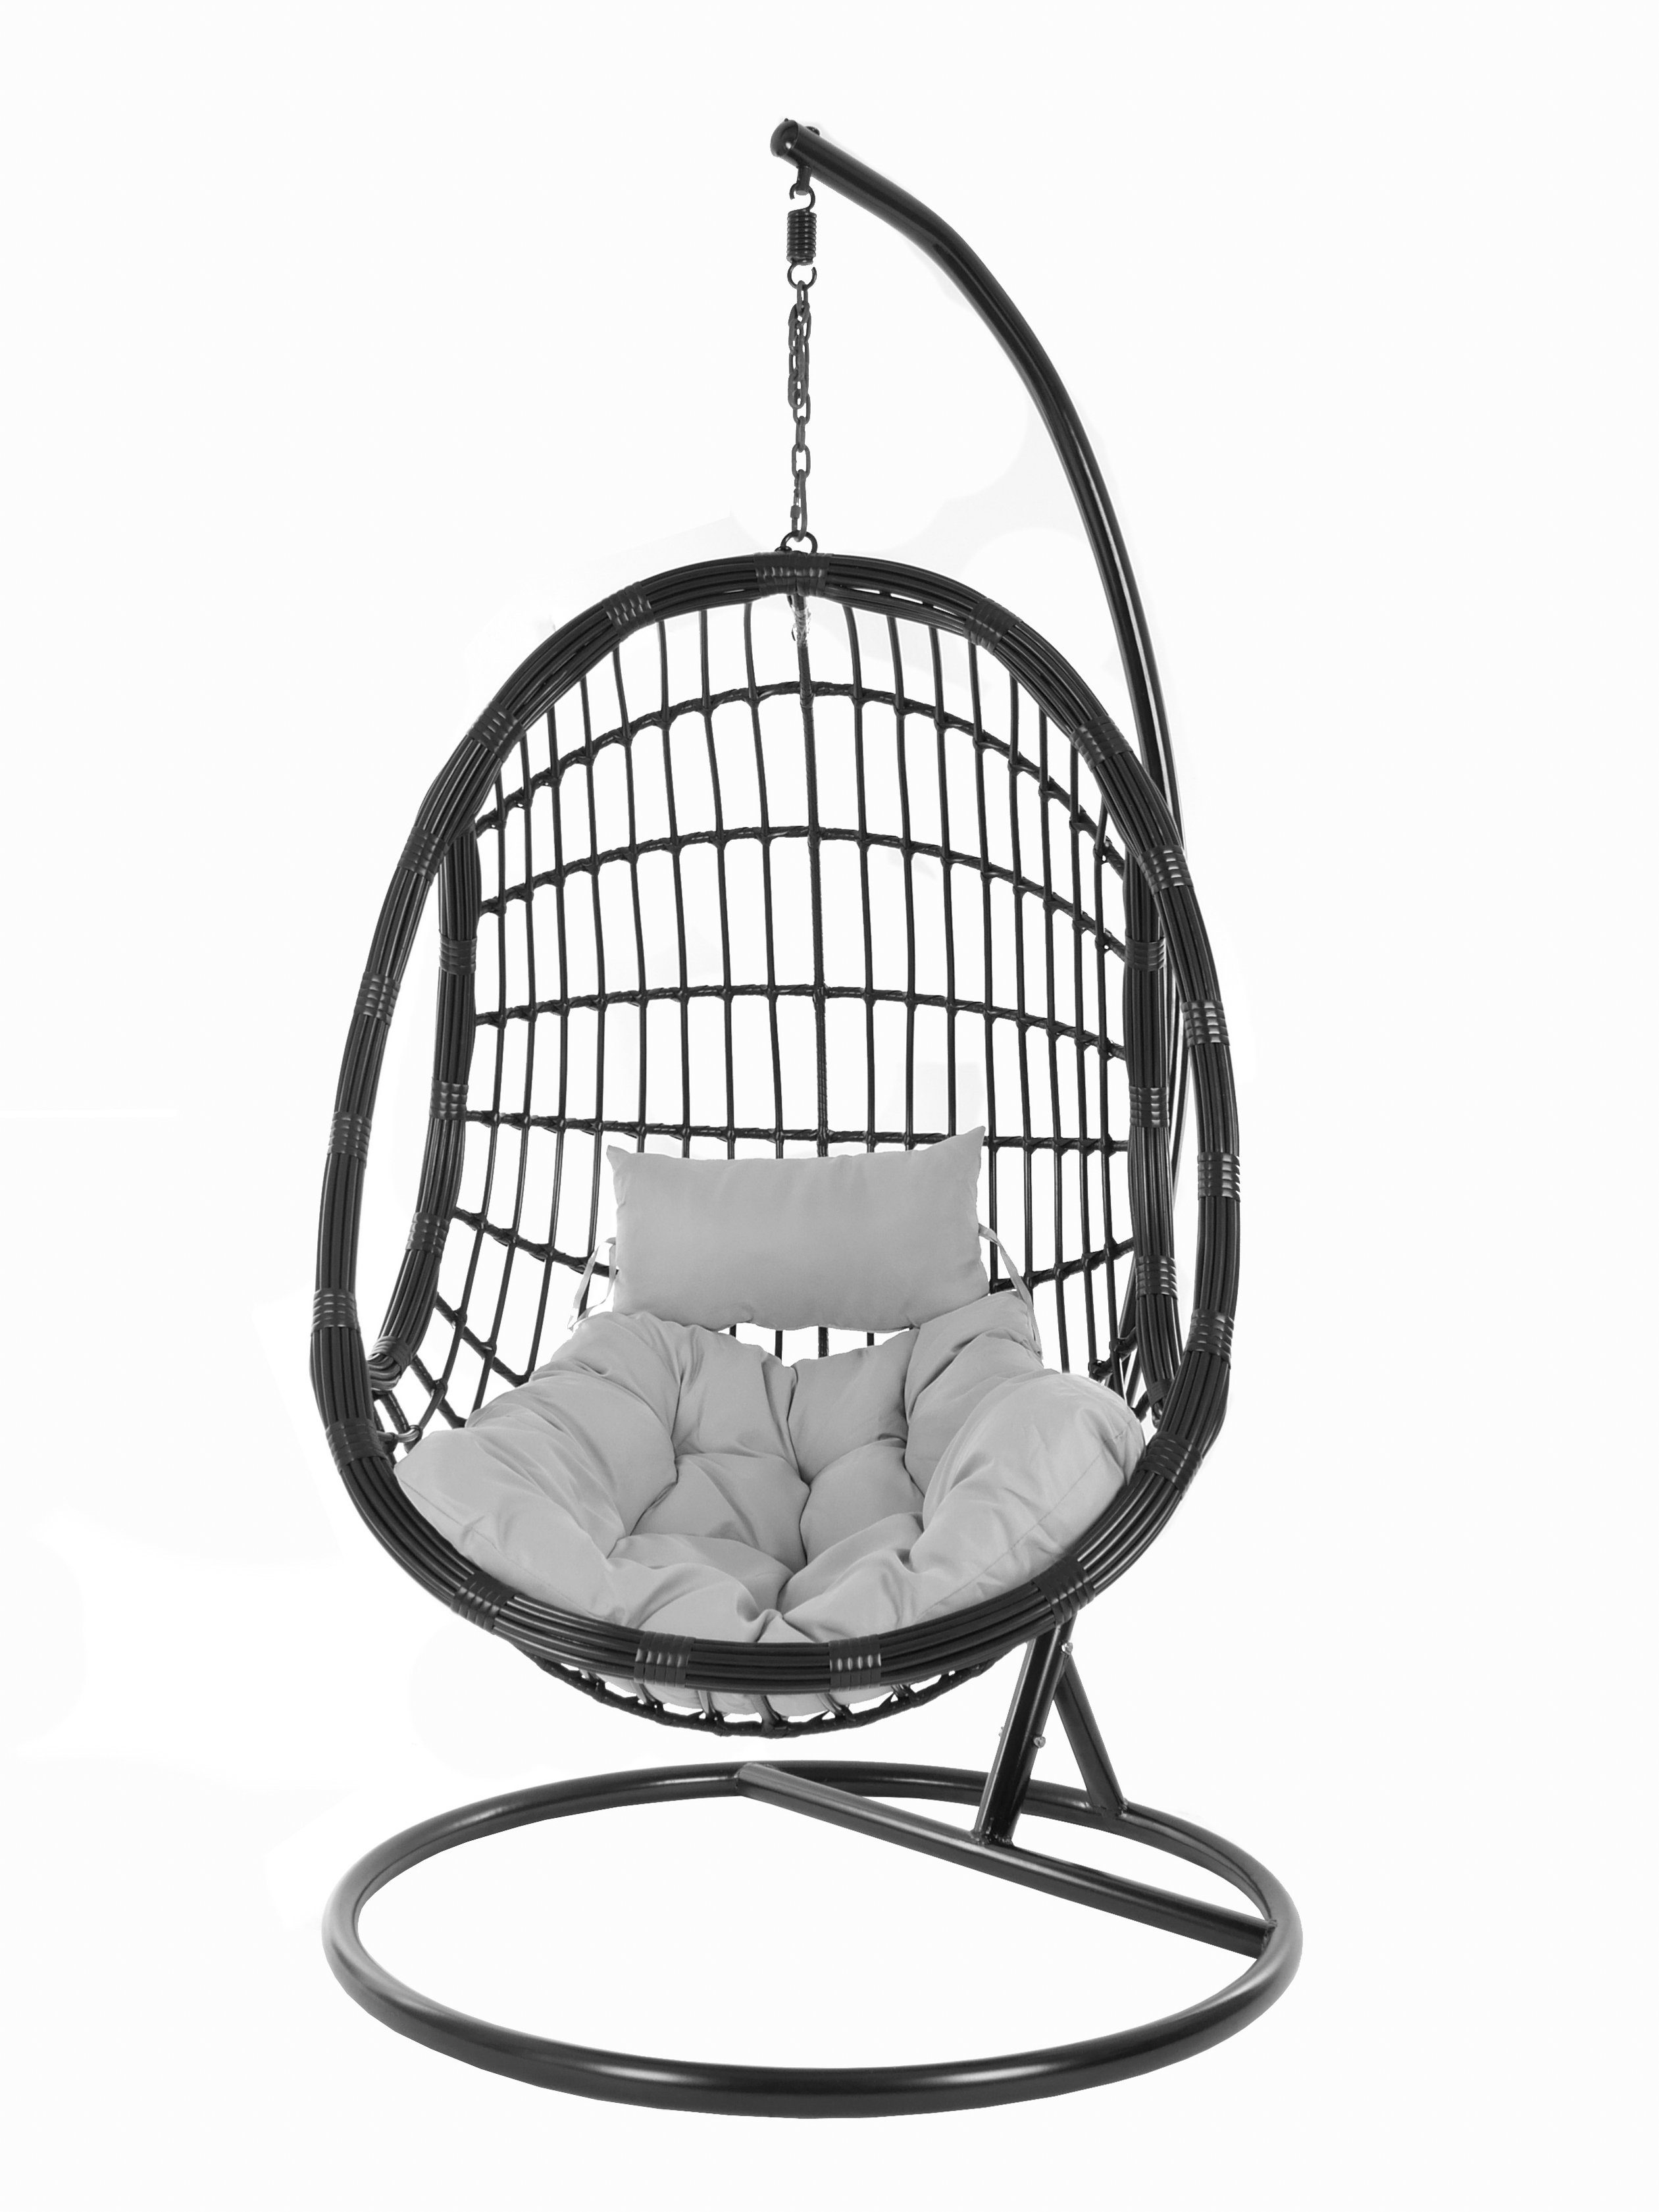 edles PALMANOVA Kissen, Design Swing KIDEO Schwebesessel, Gestell Hängesessel schwarz, black, mit (8008 Chair, cloud) und Hängesessel Loungemöbel, grau